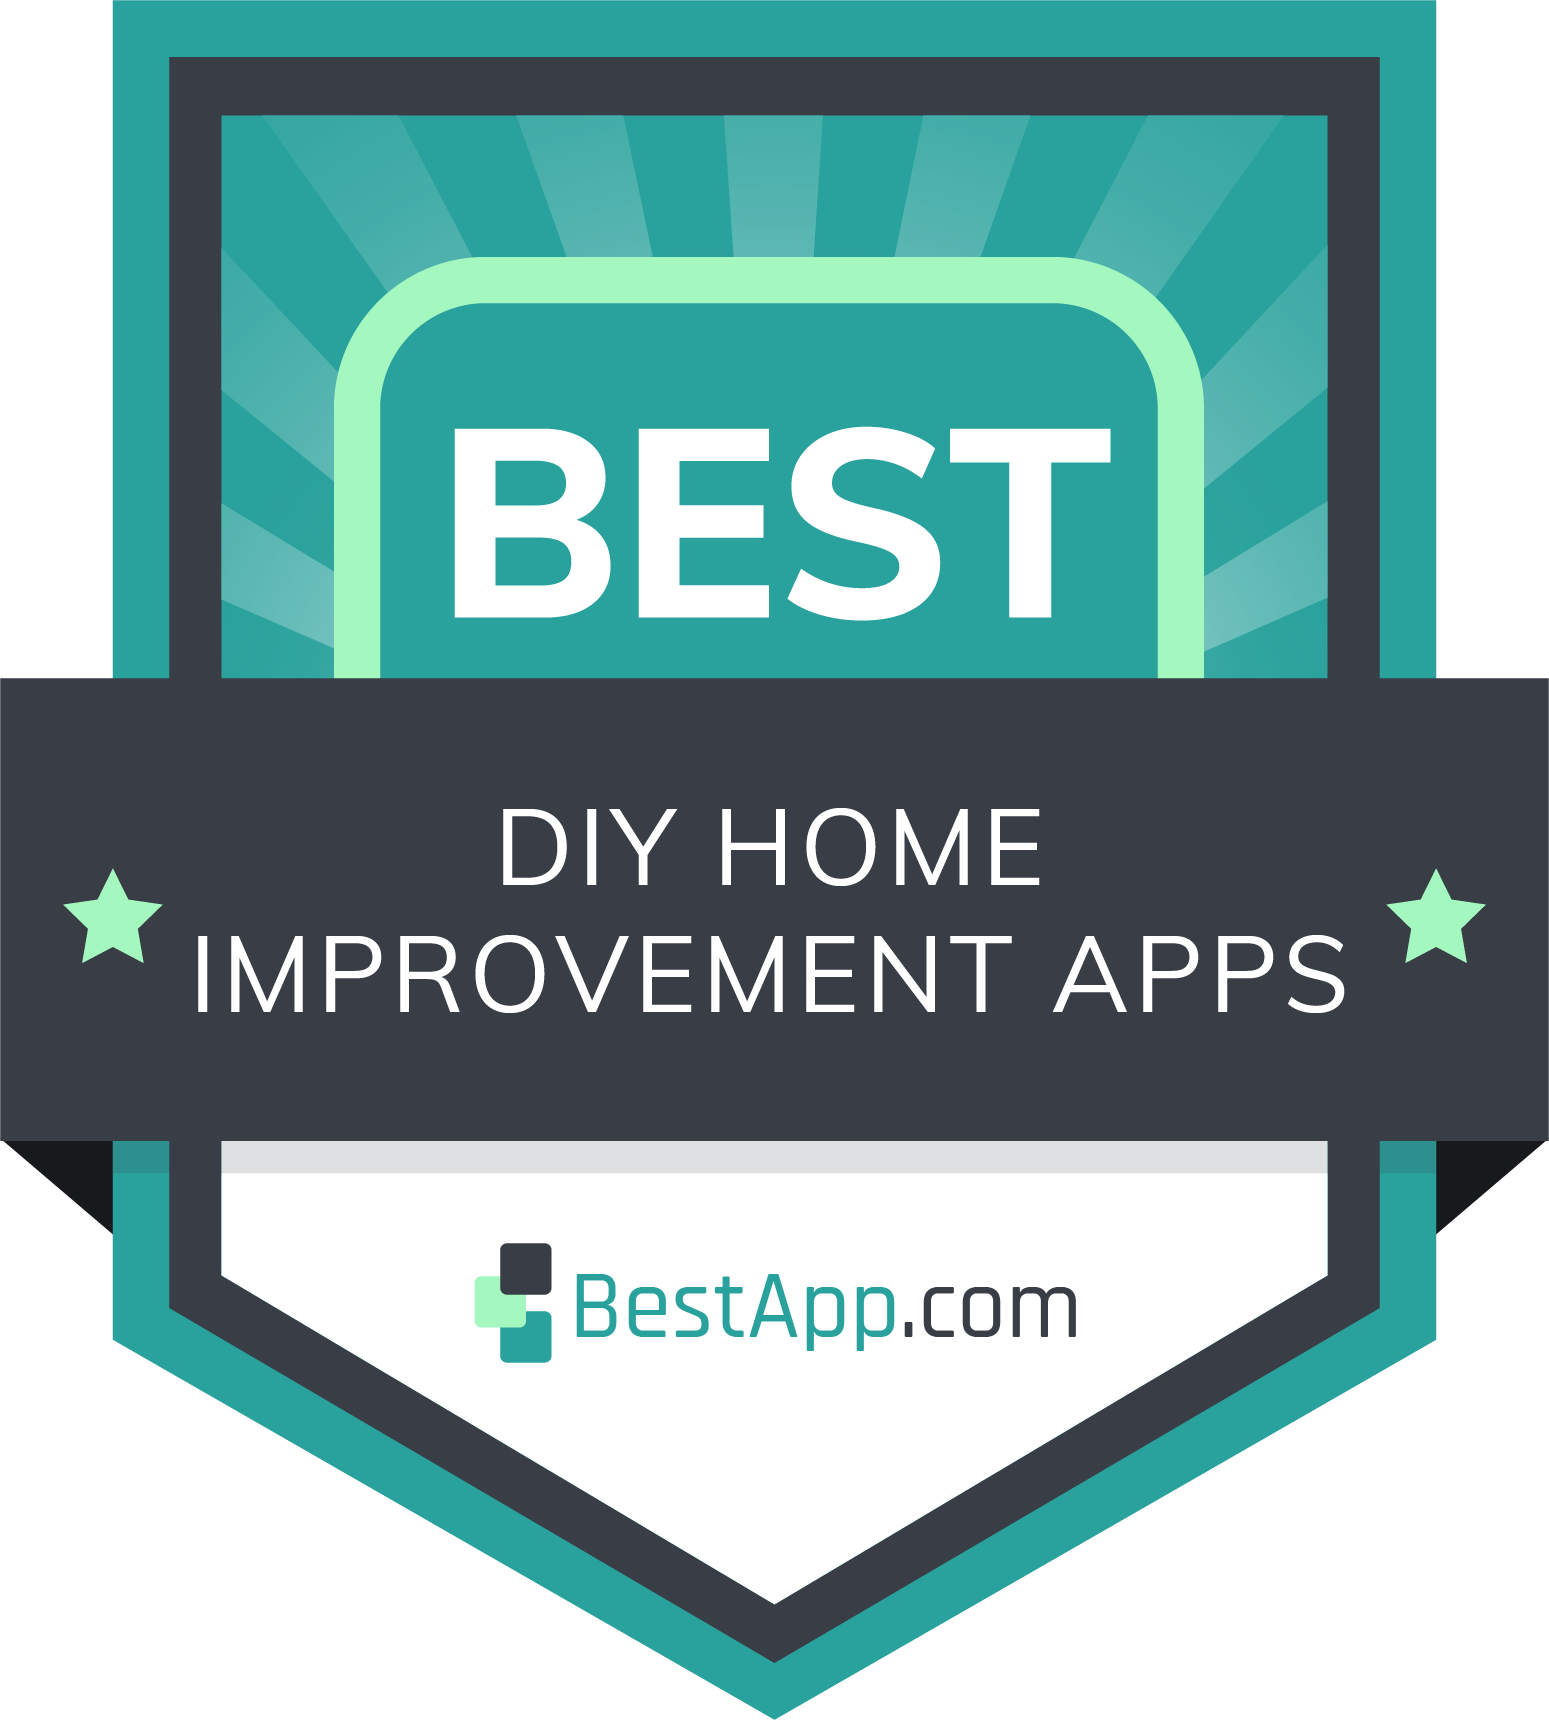 Best DIY Home Improvement Apps Badge